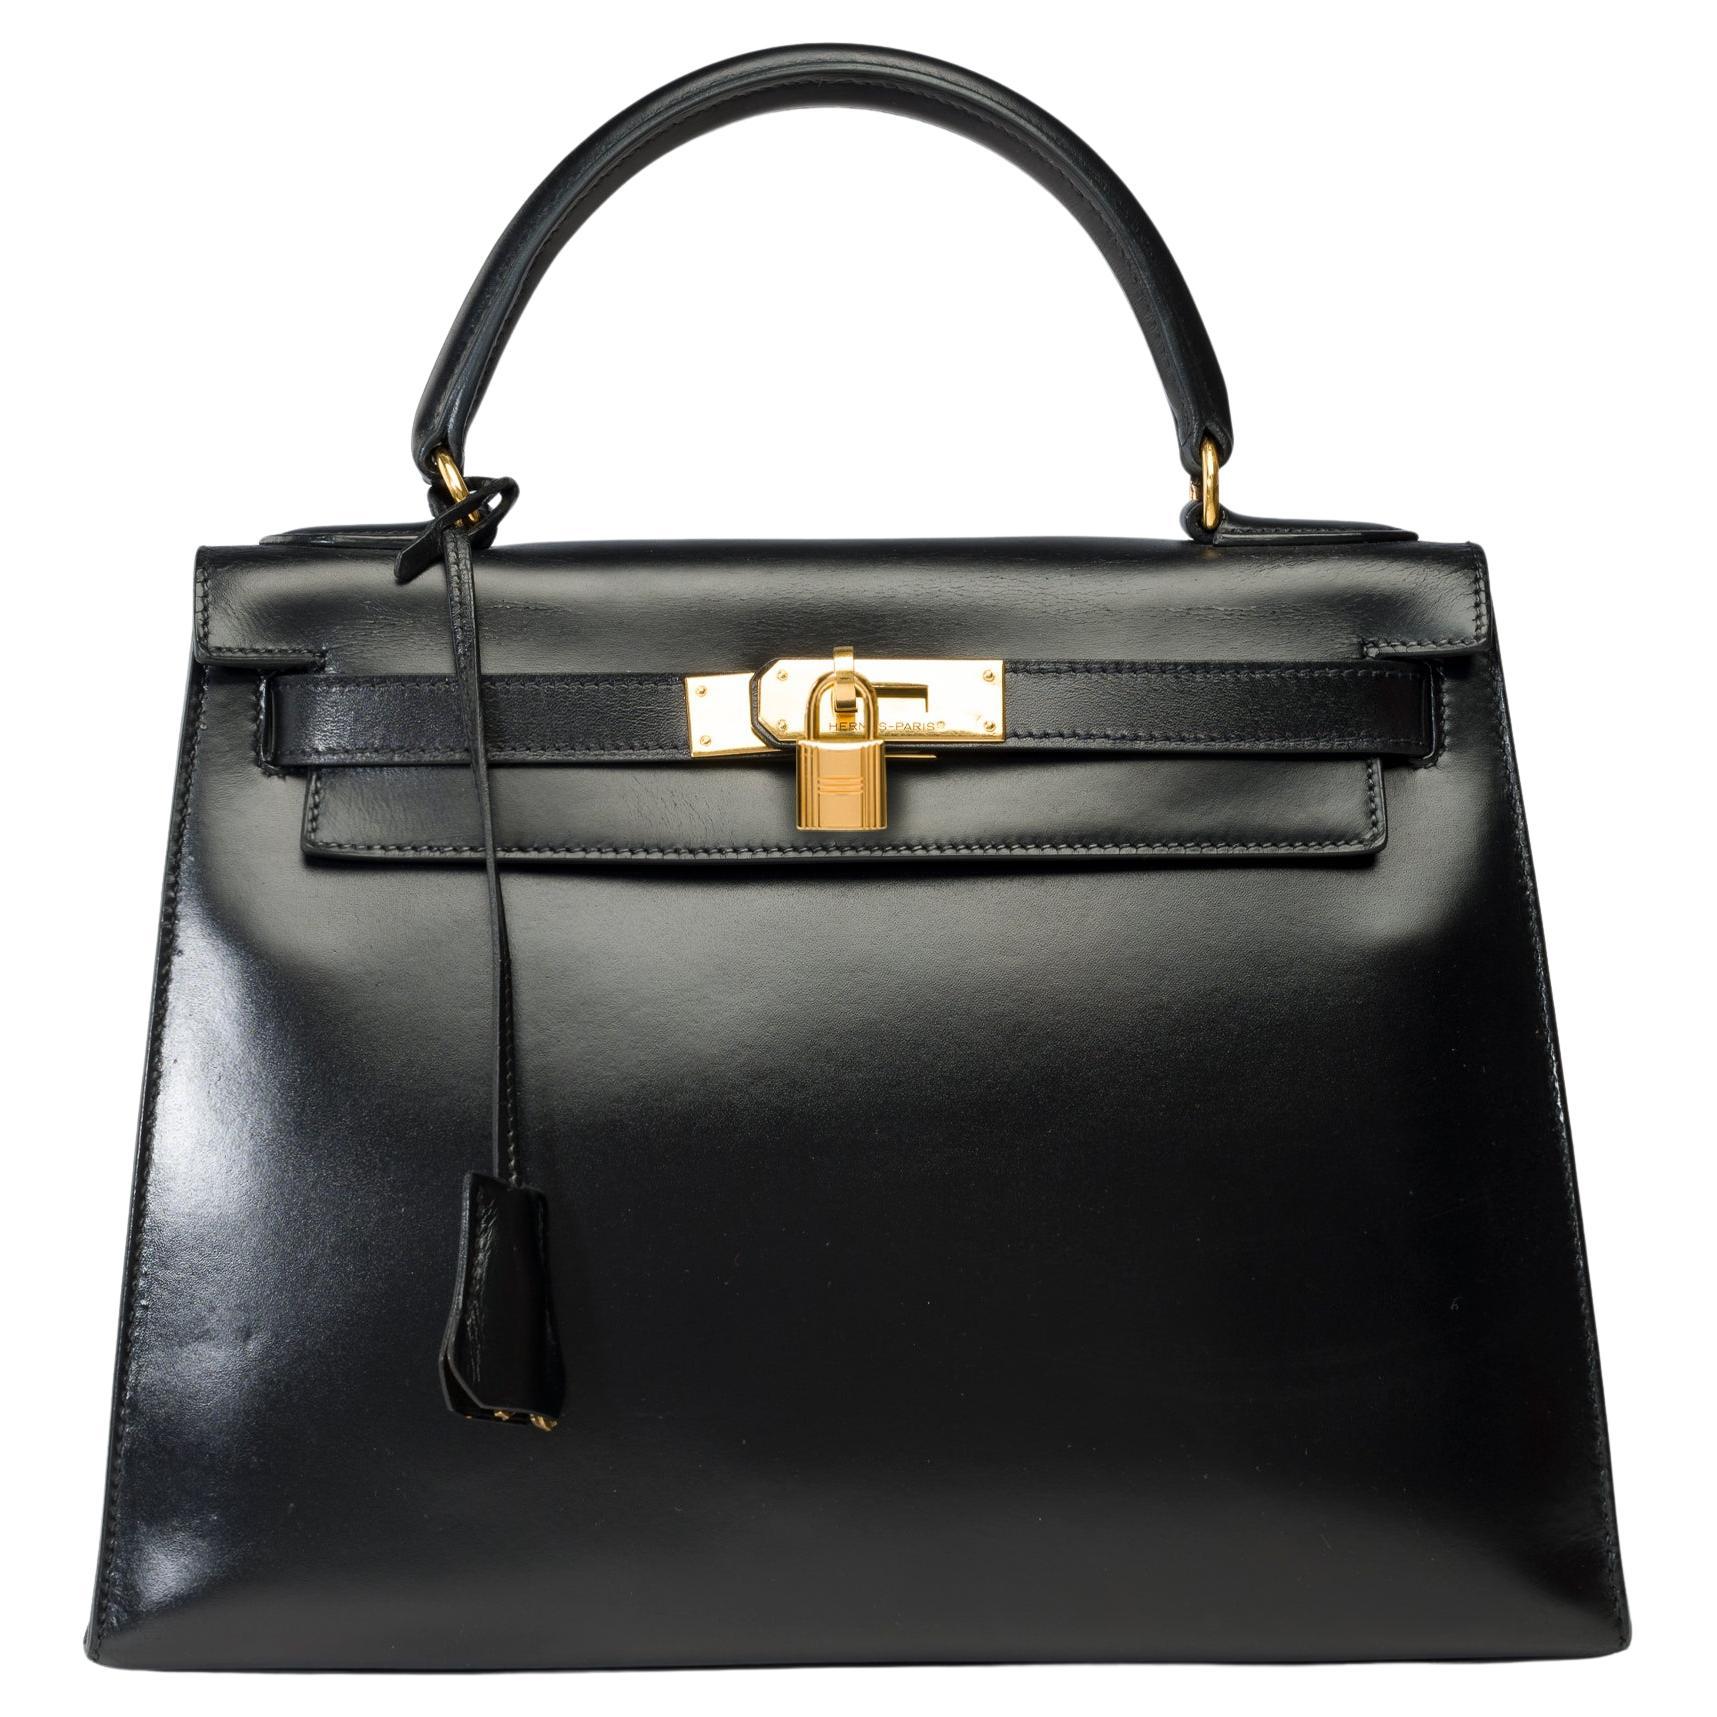 Hermes Kelly 28 sellier handbag in Black box calfskin leather, GHW For Sale